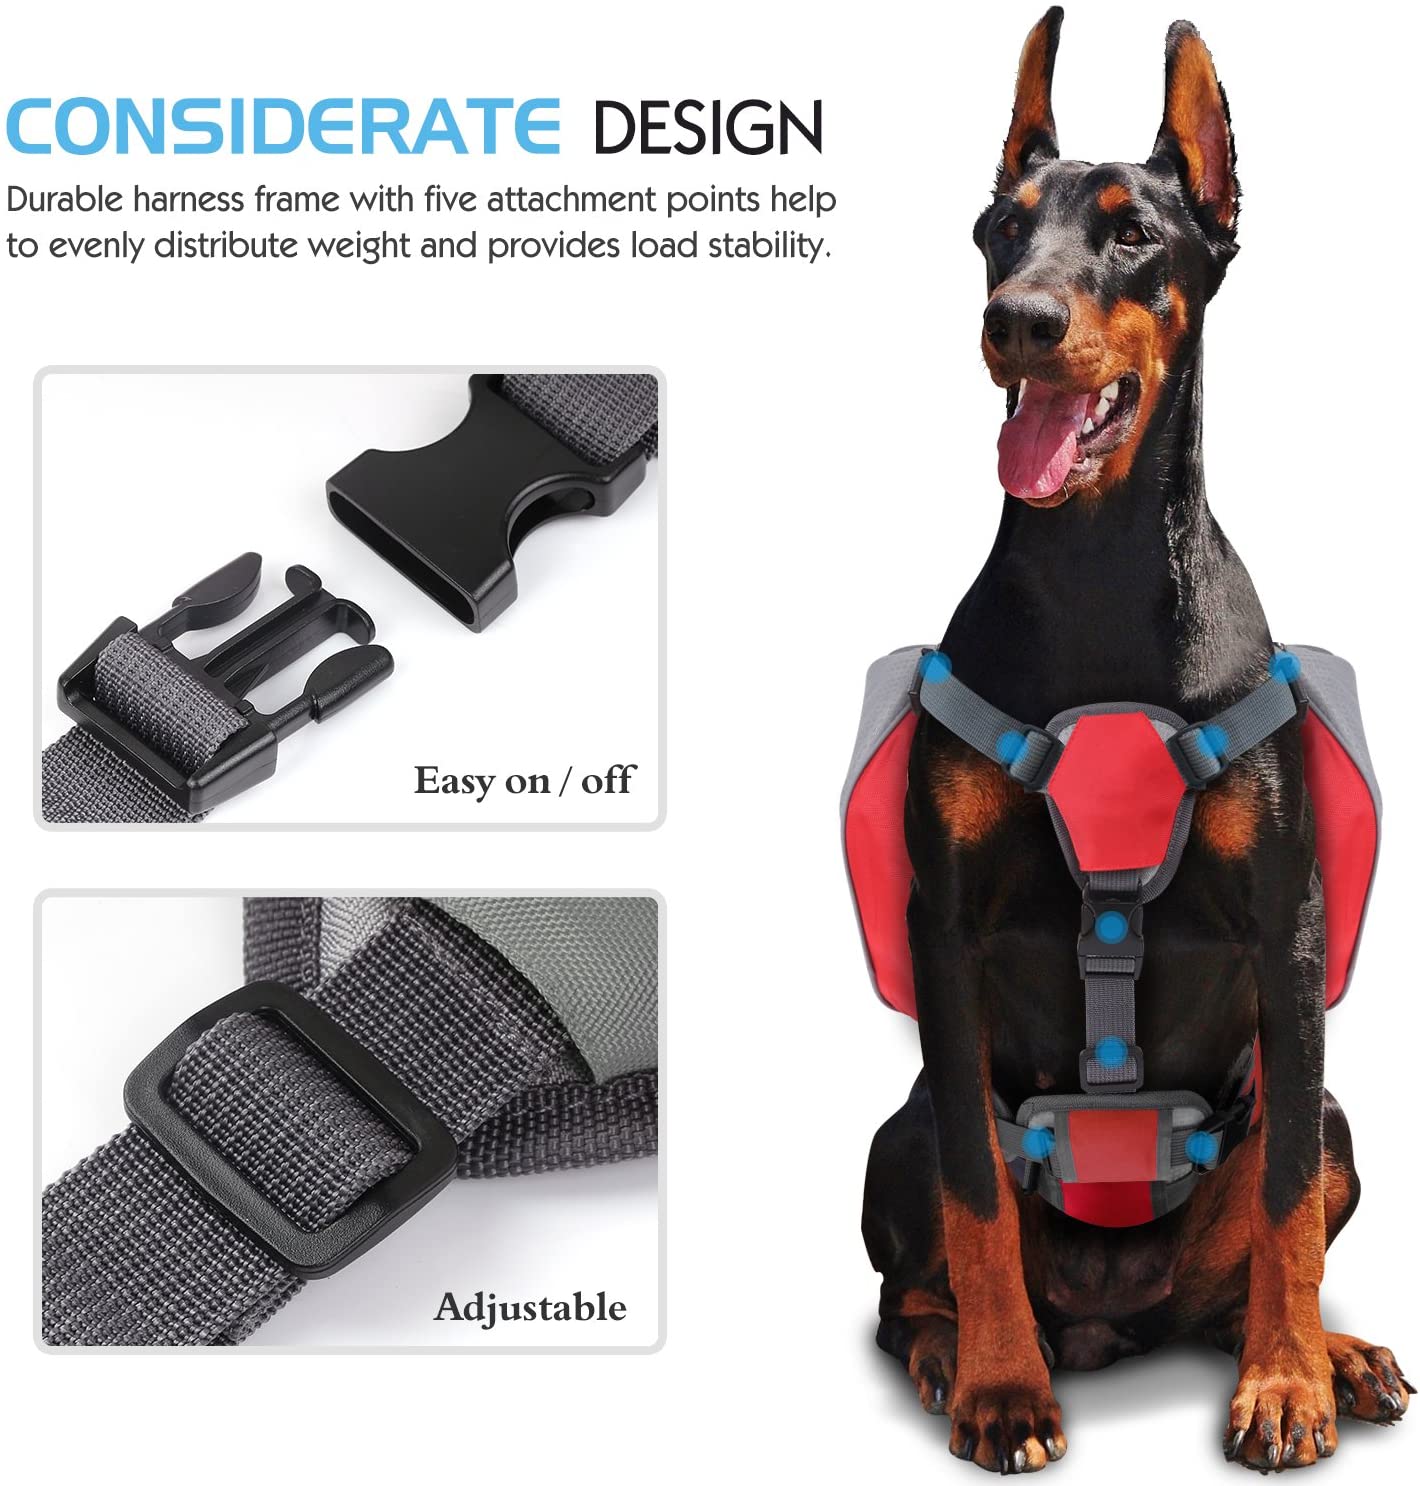  Pawaboo Mochila del Perro - Adjustable Bolsa de Sillín Portador para Mascota Pet Saddle Bag para Viajar/Senderismo/Camping, Talla Mediana, Rojo & Gris 